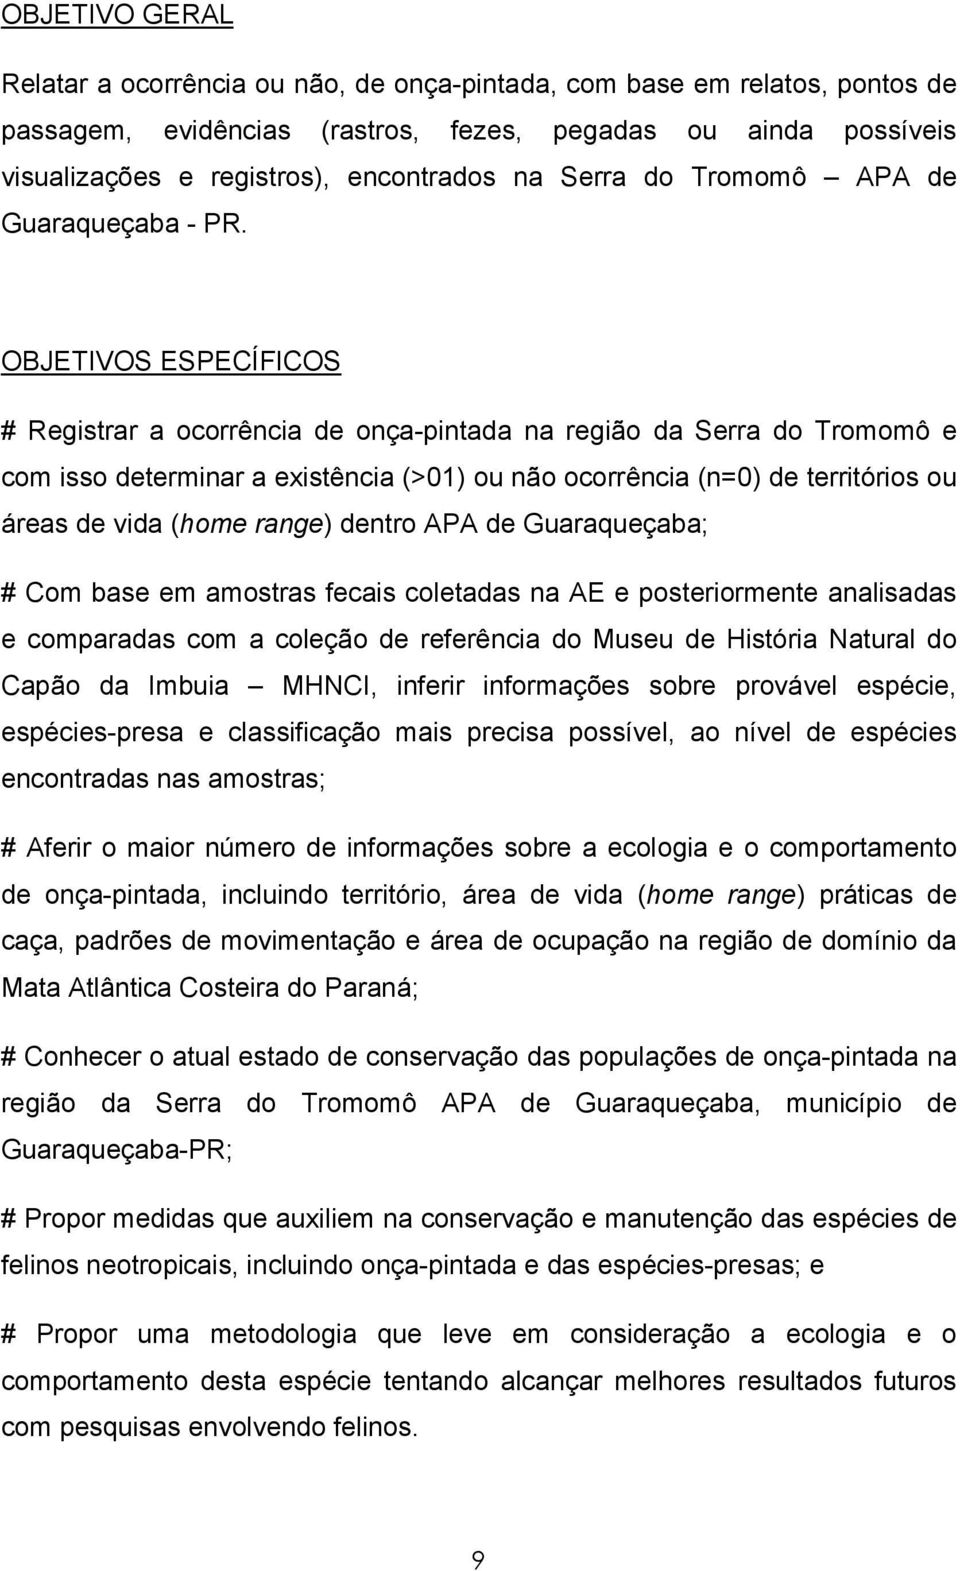 OBJETIVOS ESPECÍFICOS # Registrar a ocorrência de onça-pintada na região da Serra do Tromomô e com isso determinar a existência (>01) ou não ocorrência (n=0) de territórios ou áreas de vida (home